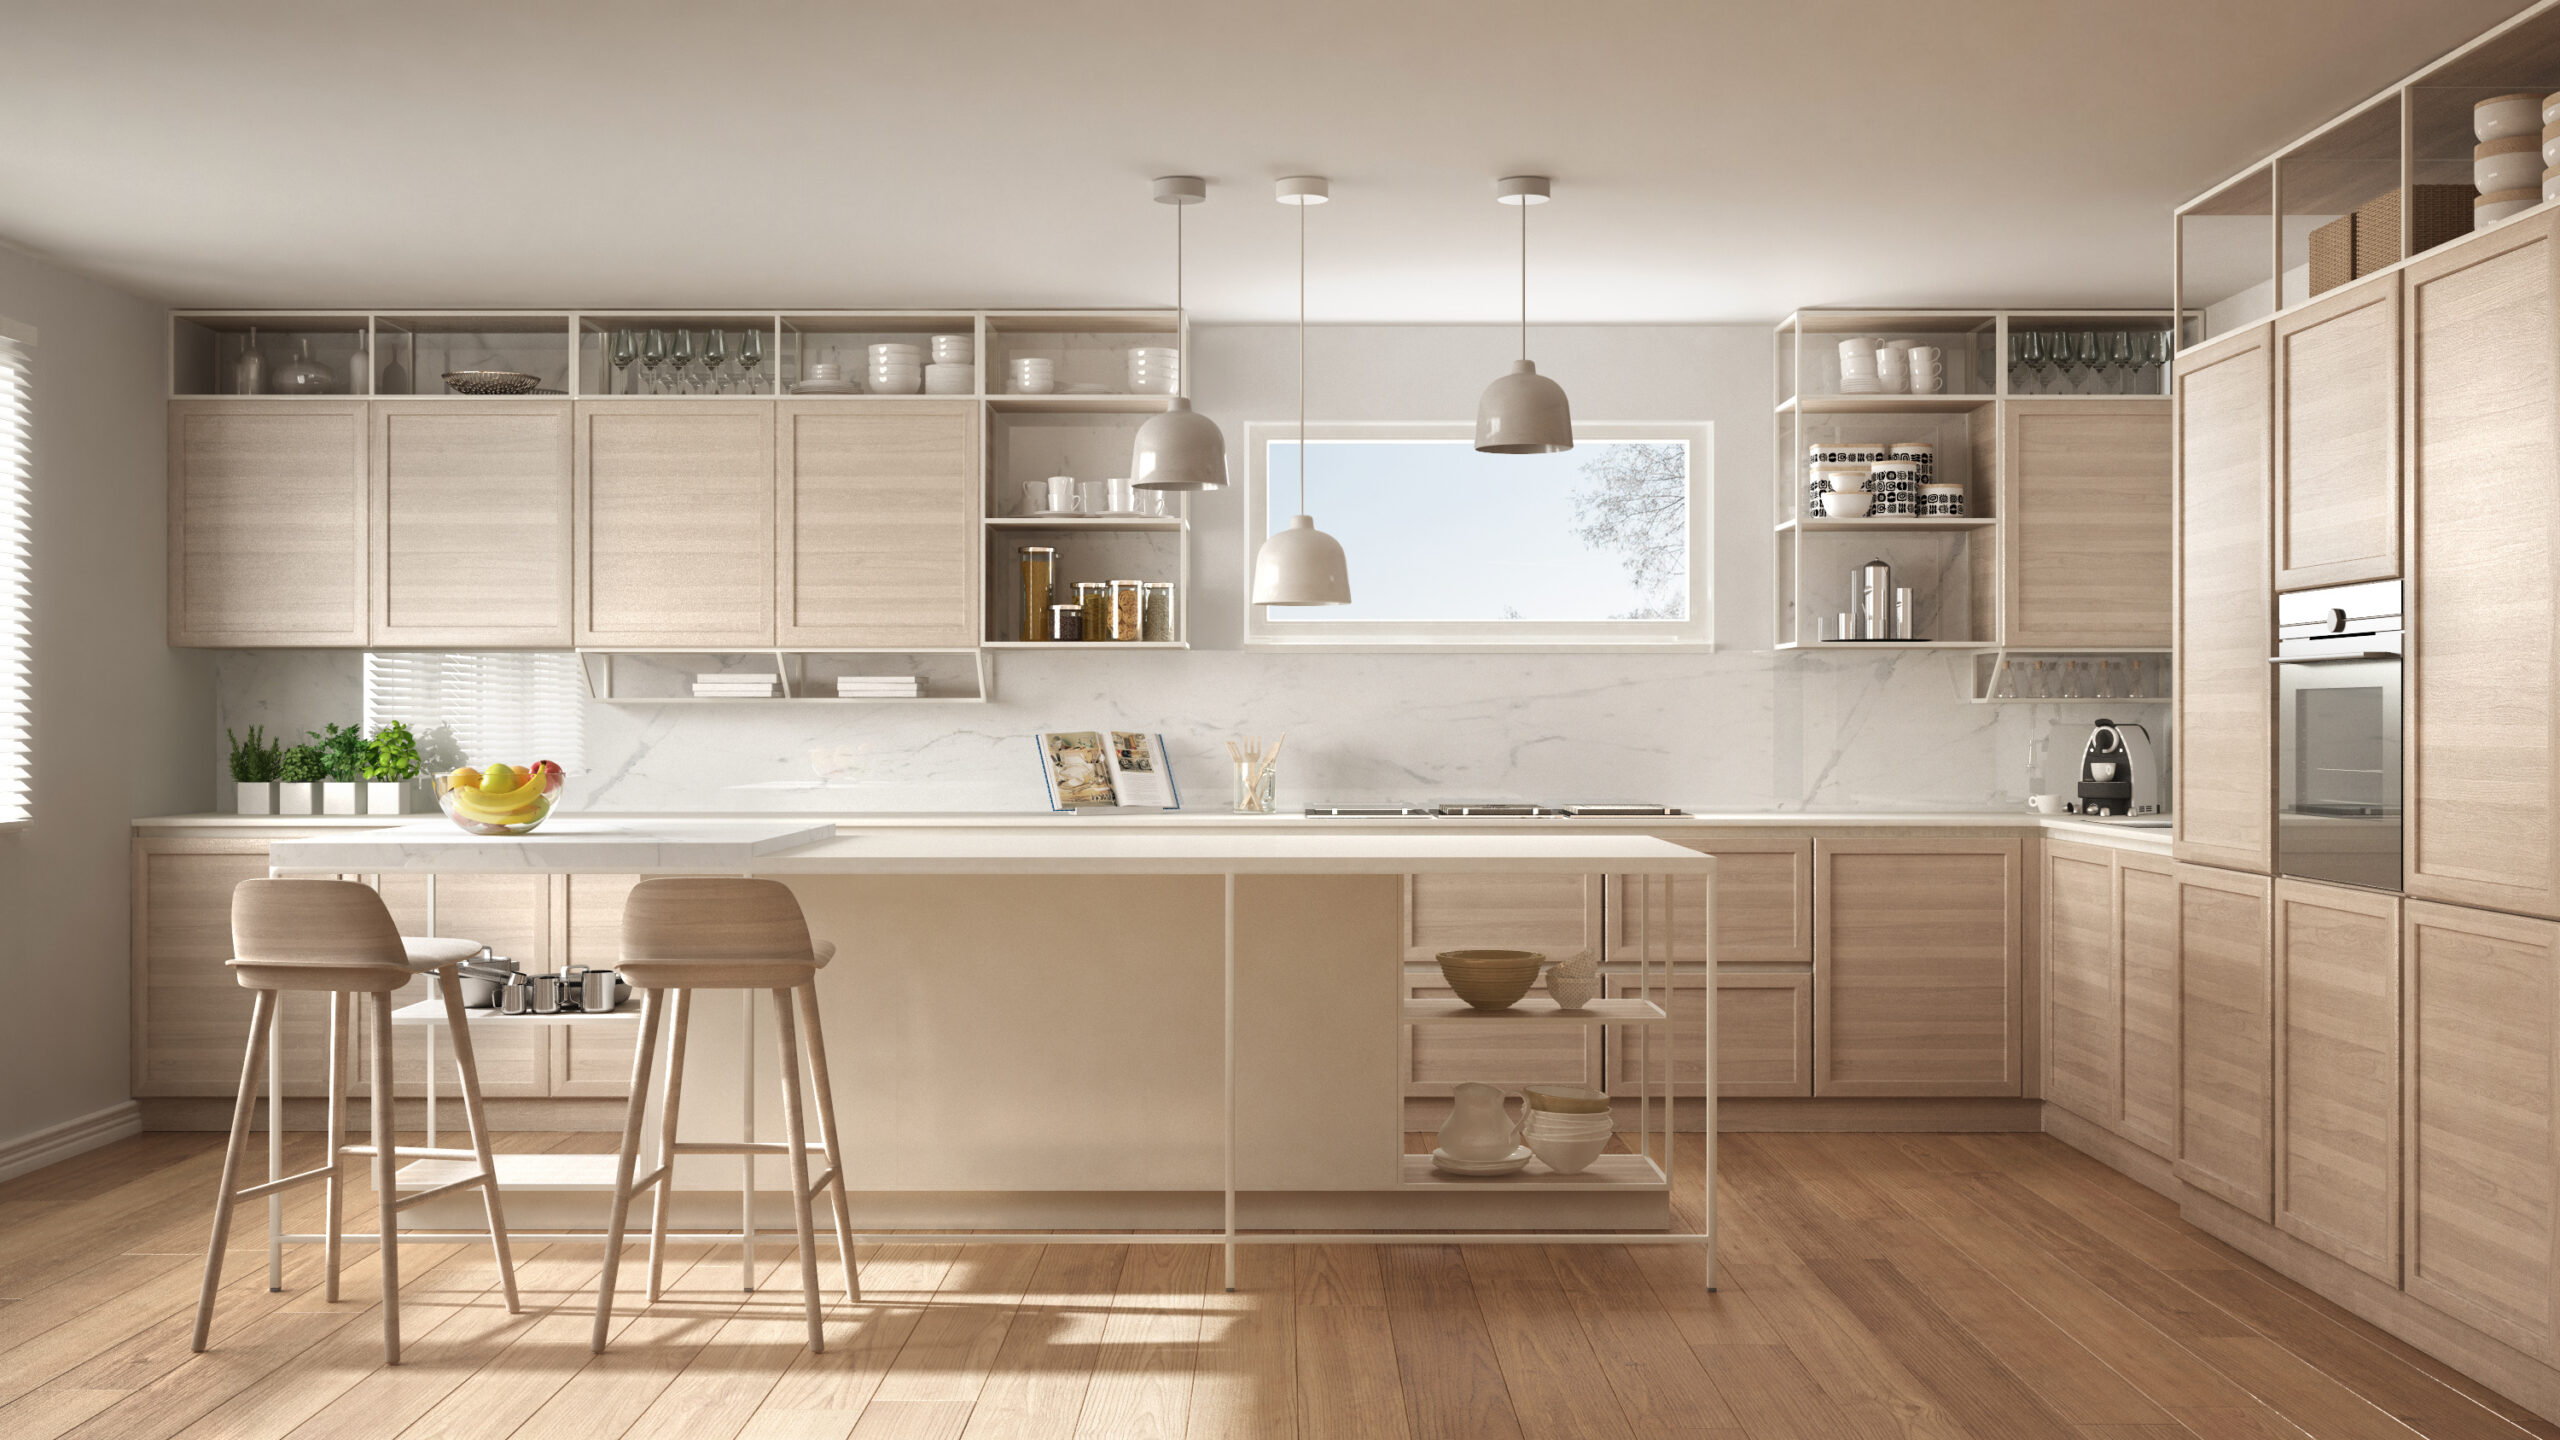 Modern white kitchen with wooden details and parquet floor, mode